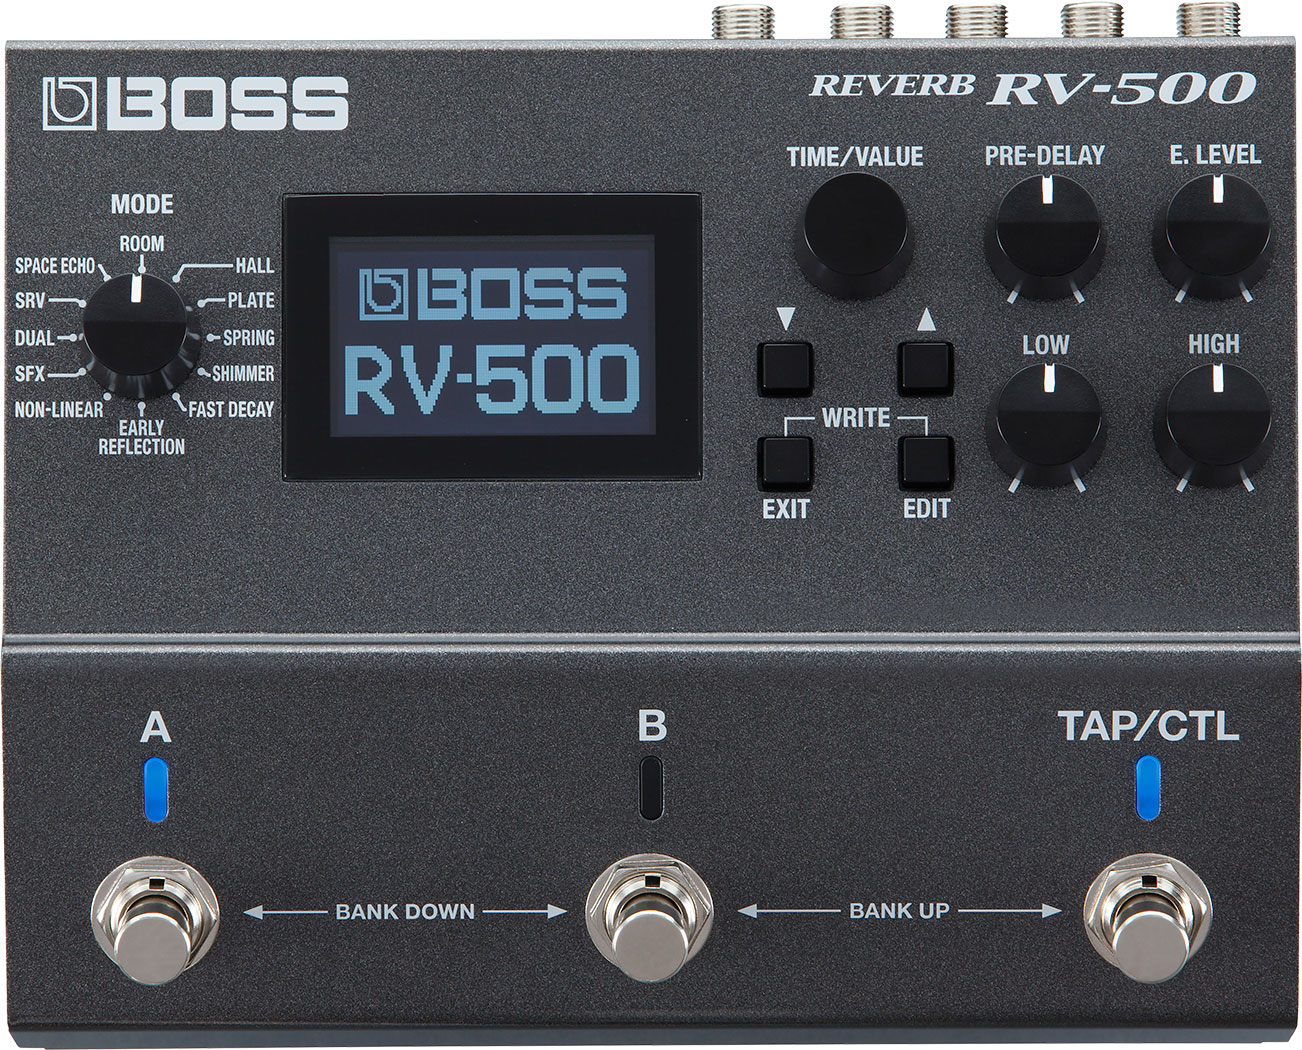 RV-500 Demo Reverb